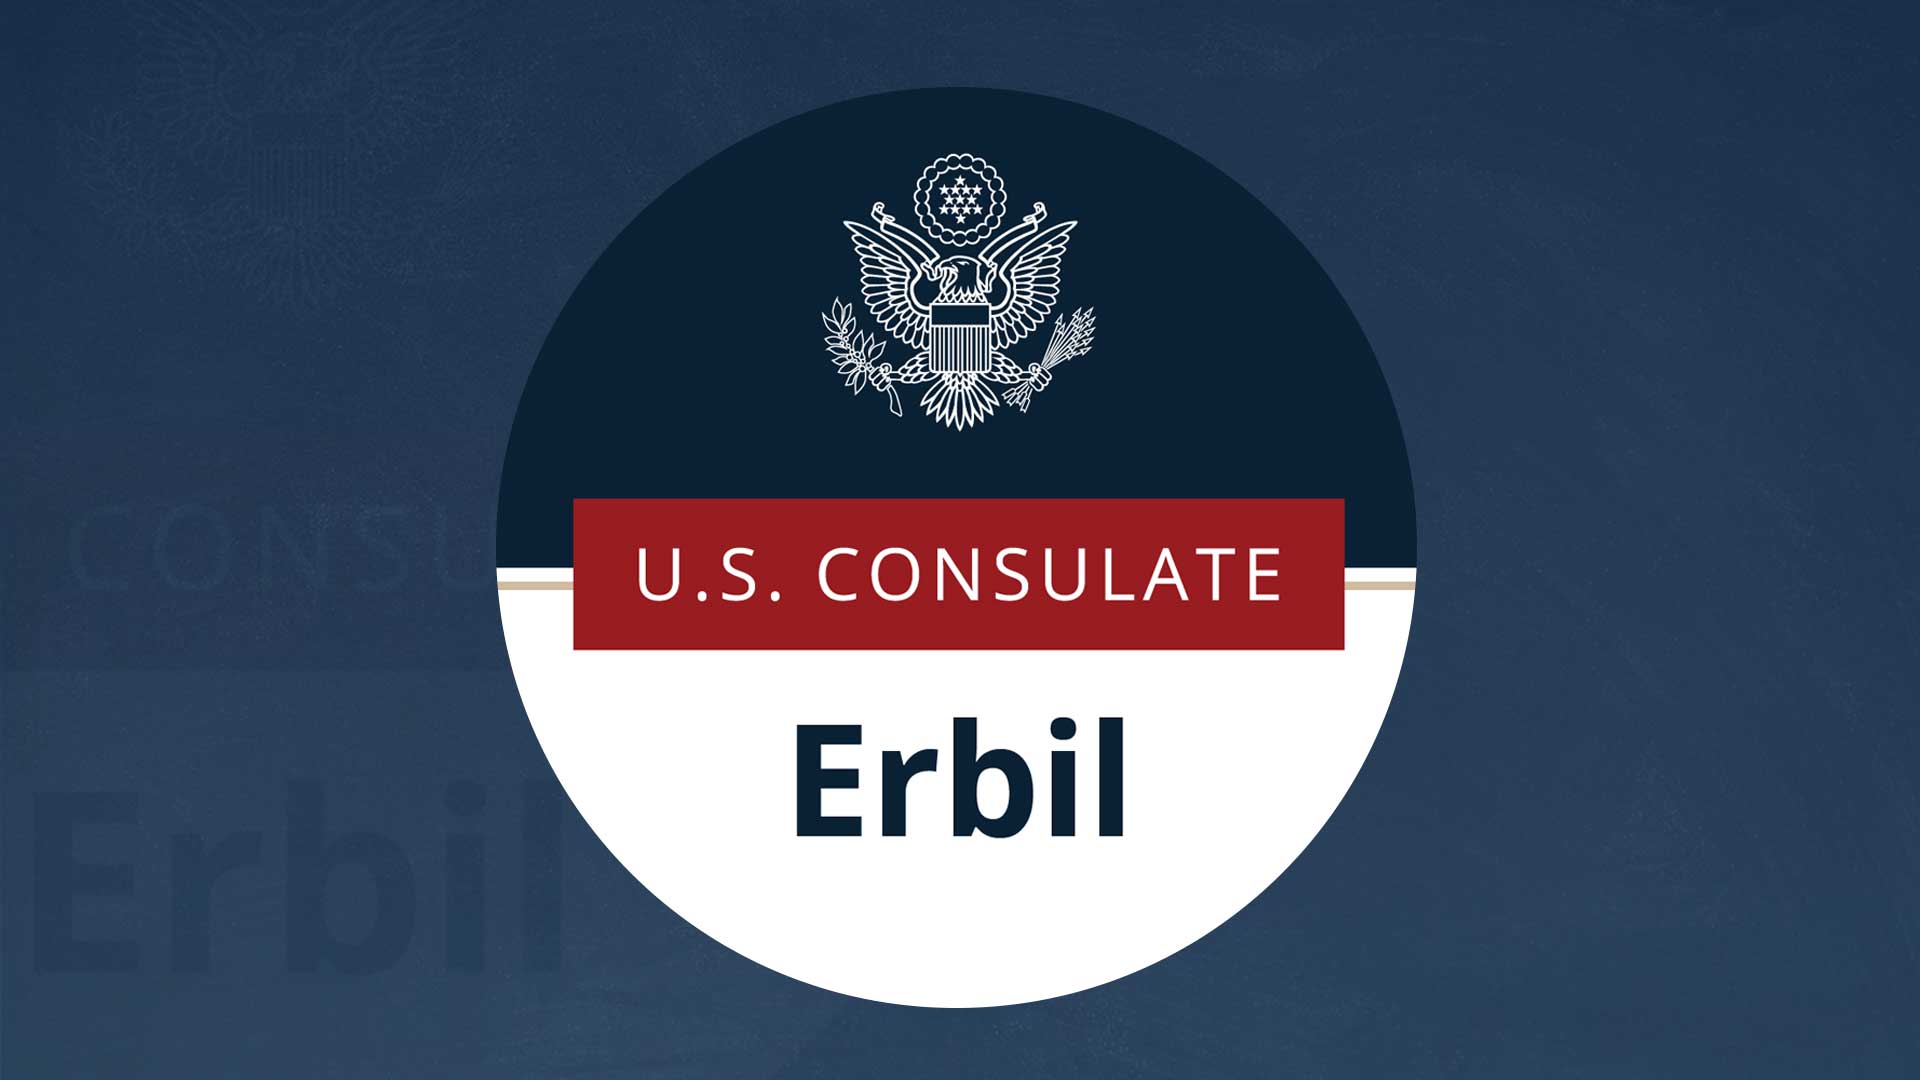 The logo of  U.S. Consulate General in Erbil.